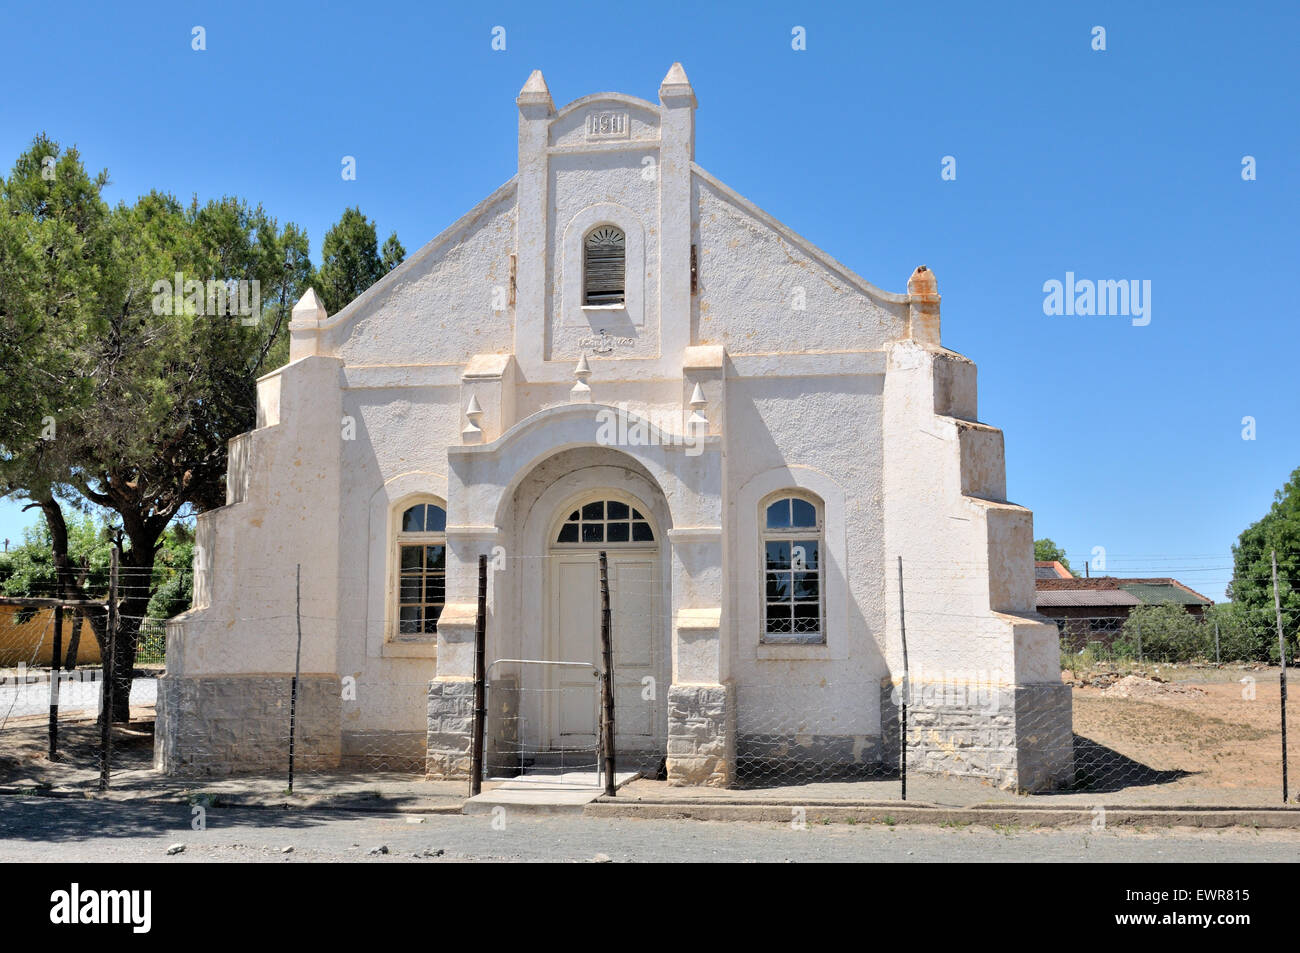 Église inutilisée à Hanovre, Province du Cap du Nord de l'Afrique du Sud. Construit en 1911. Banque D'Images